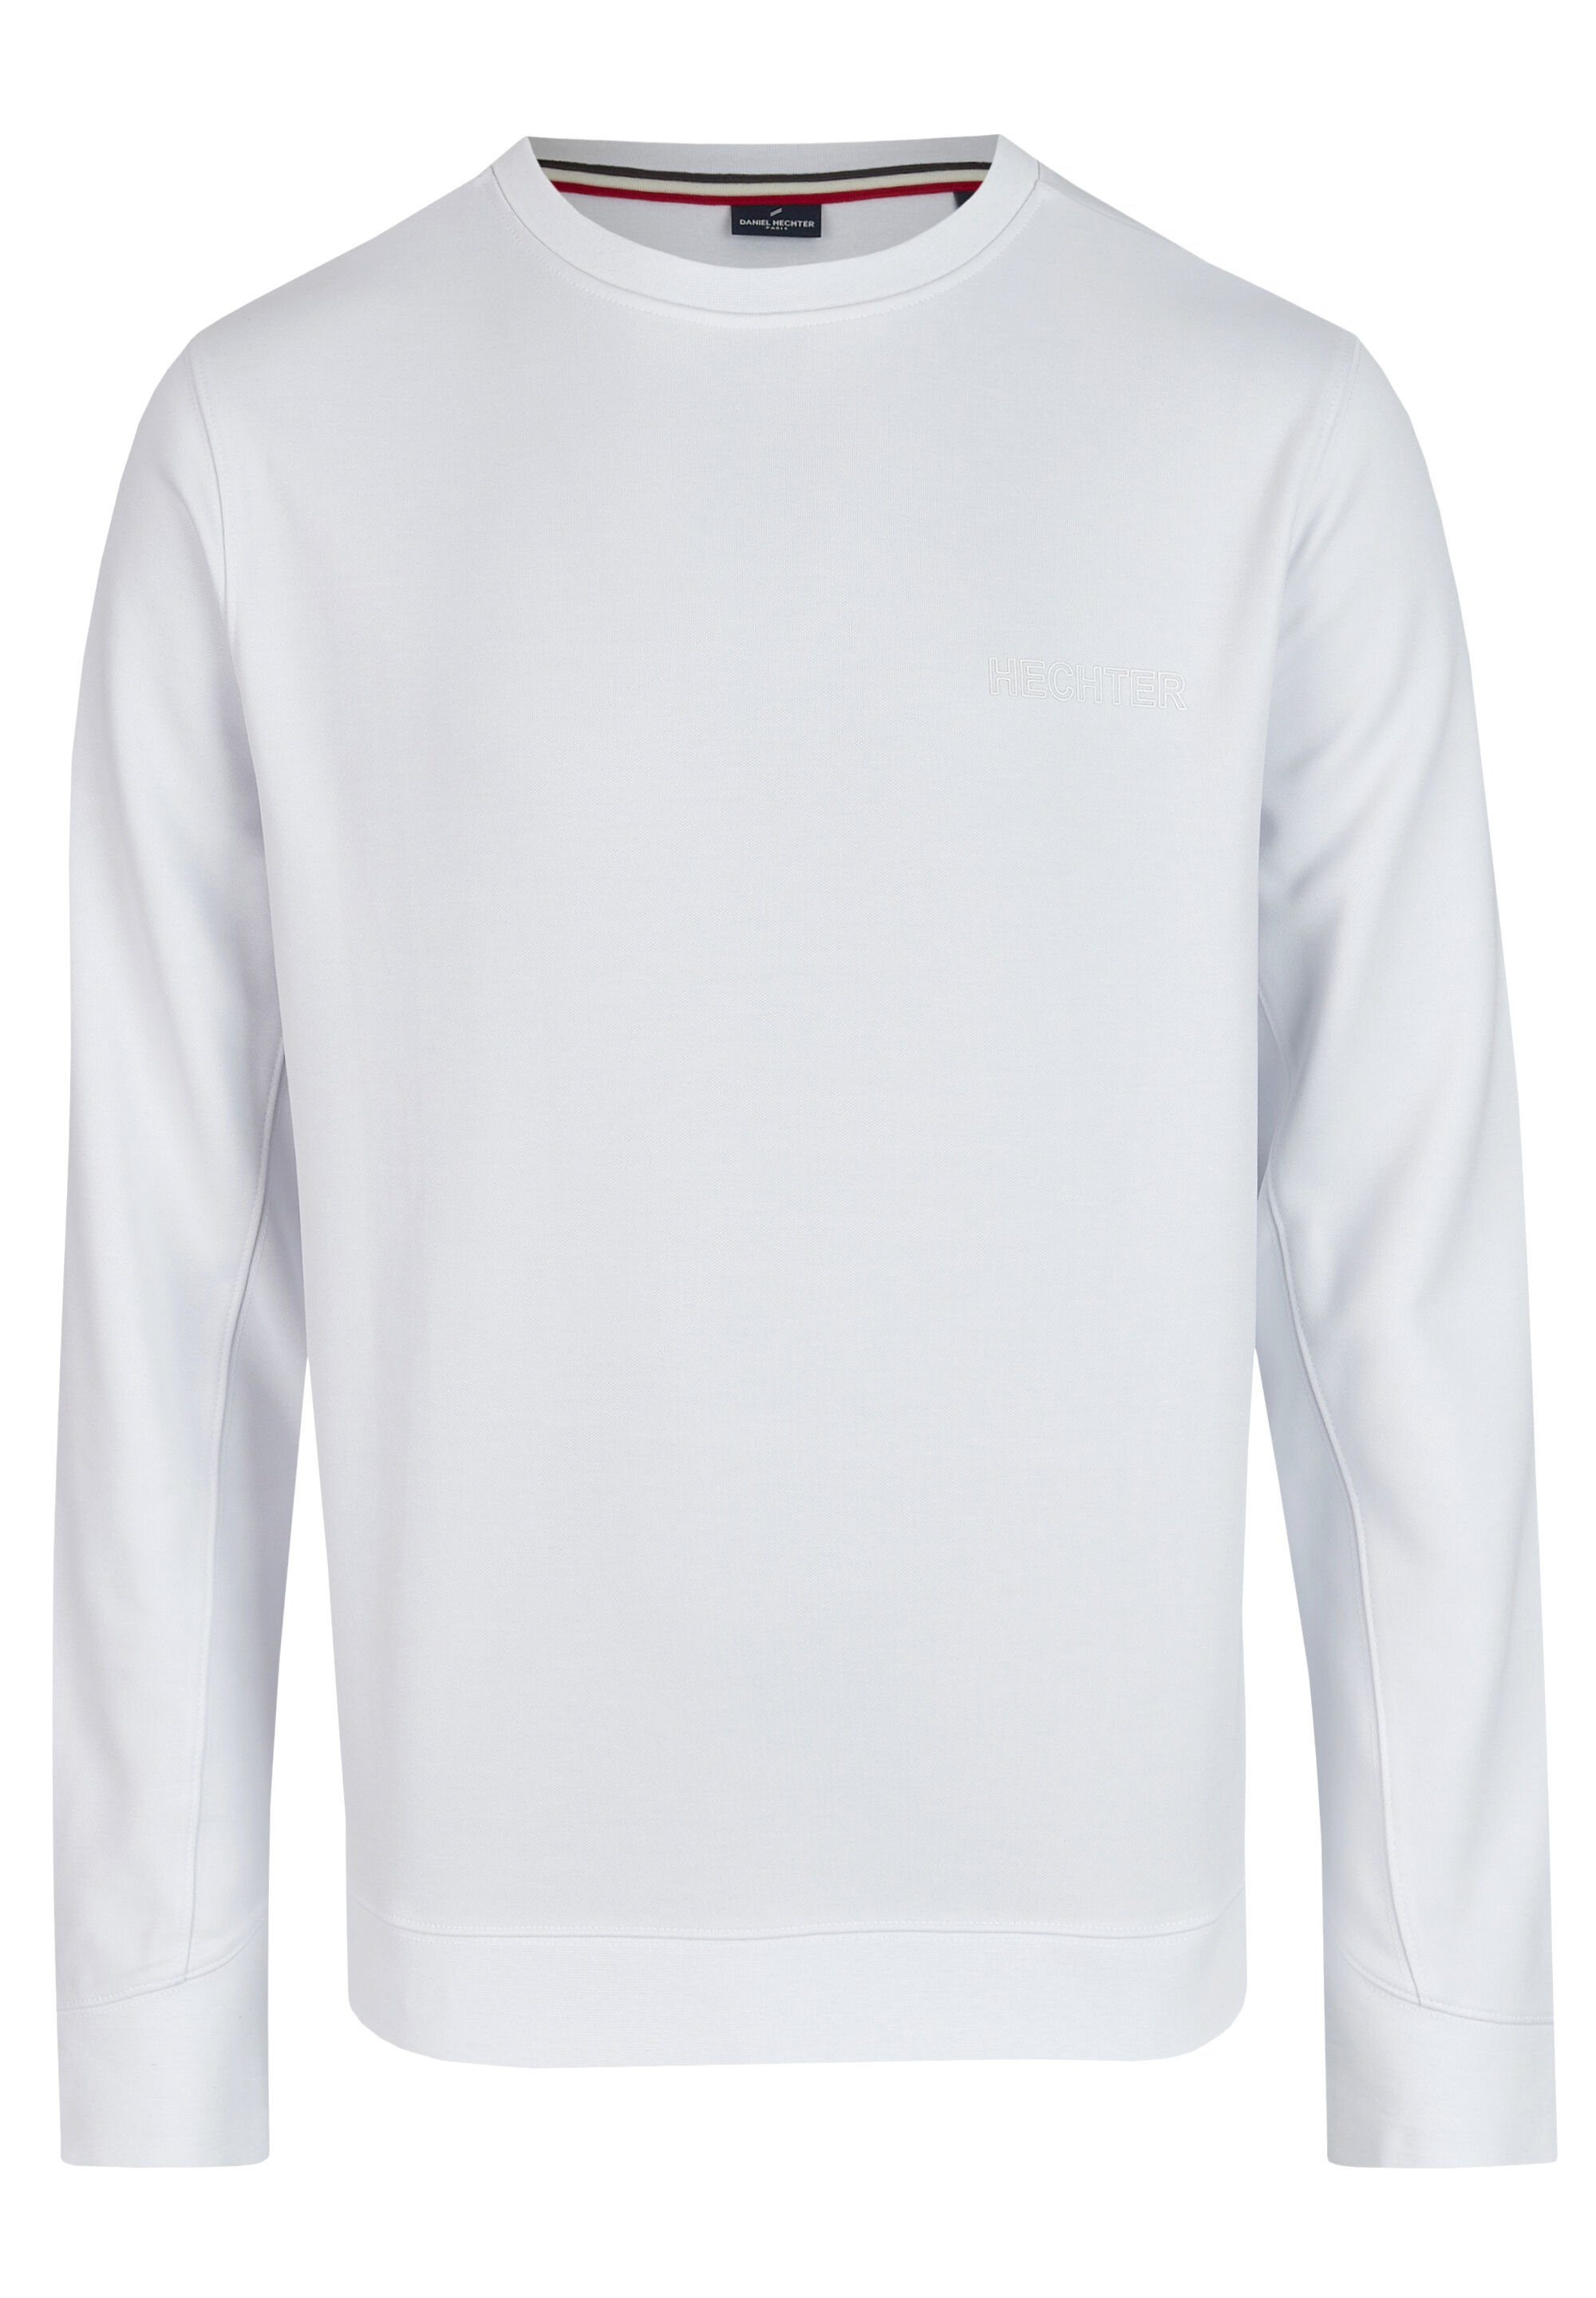 HECHTER PARIS Sweatshirt Logo-Print white mit